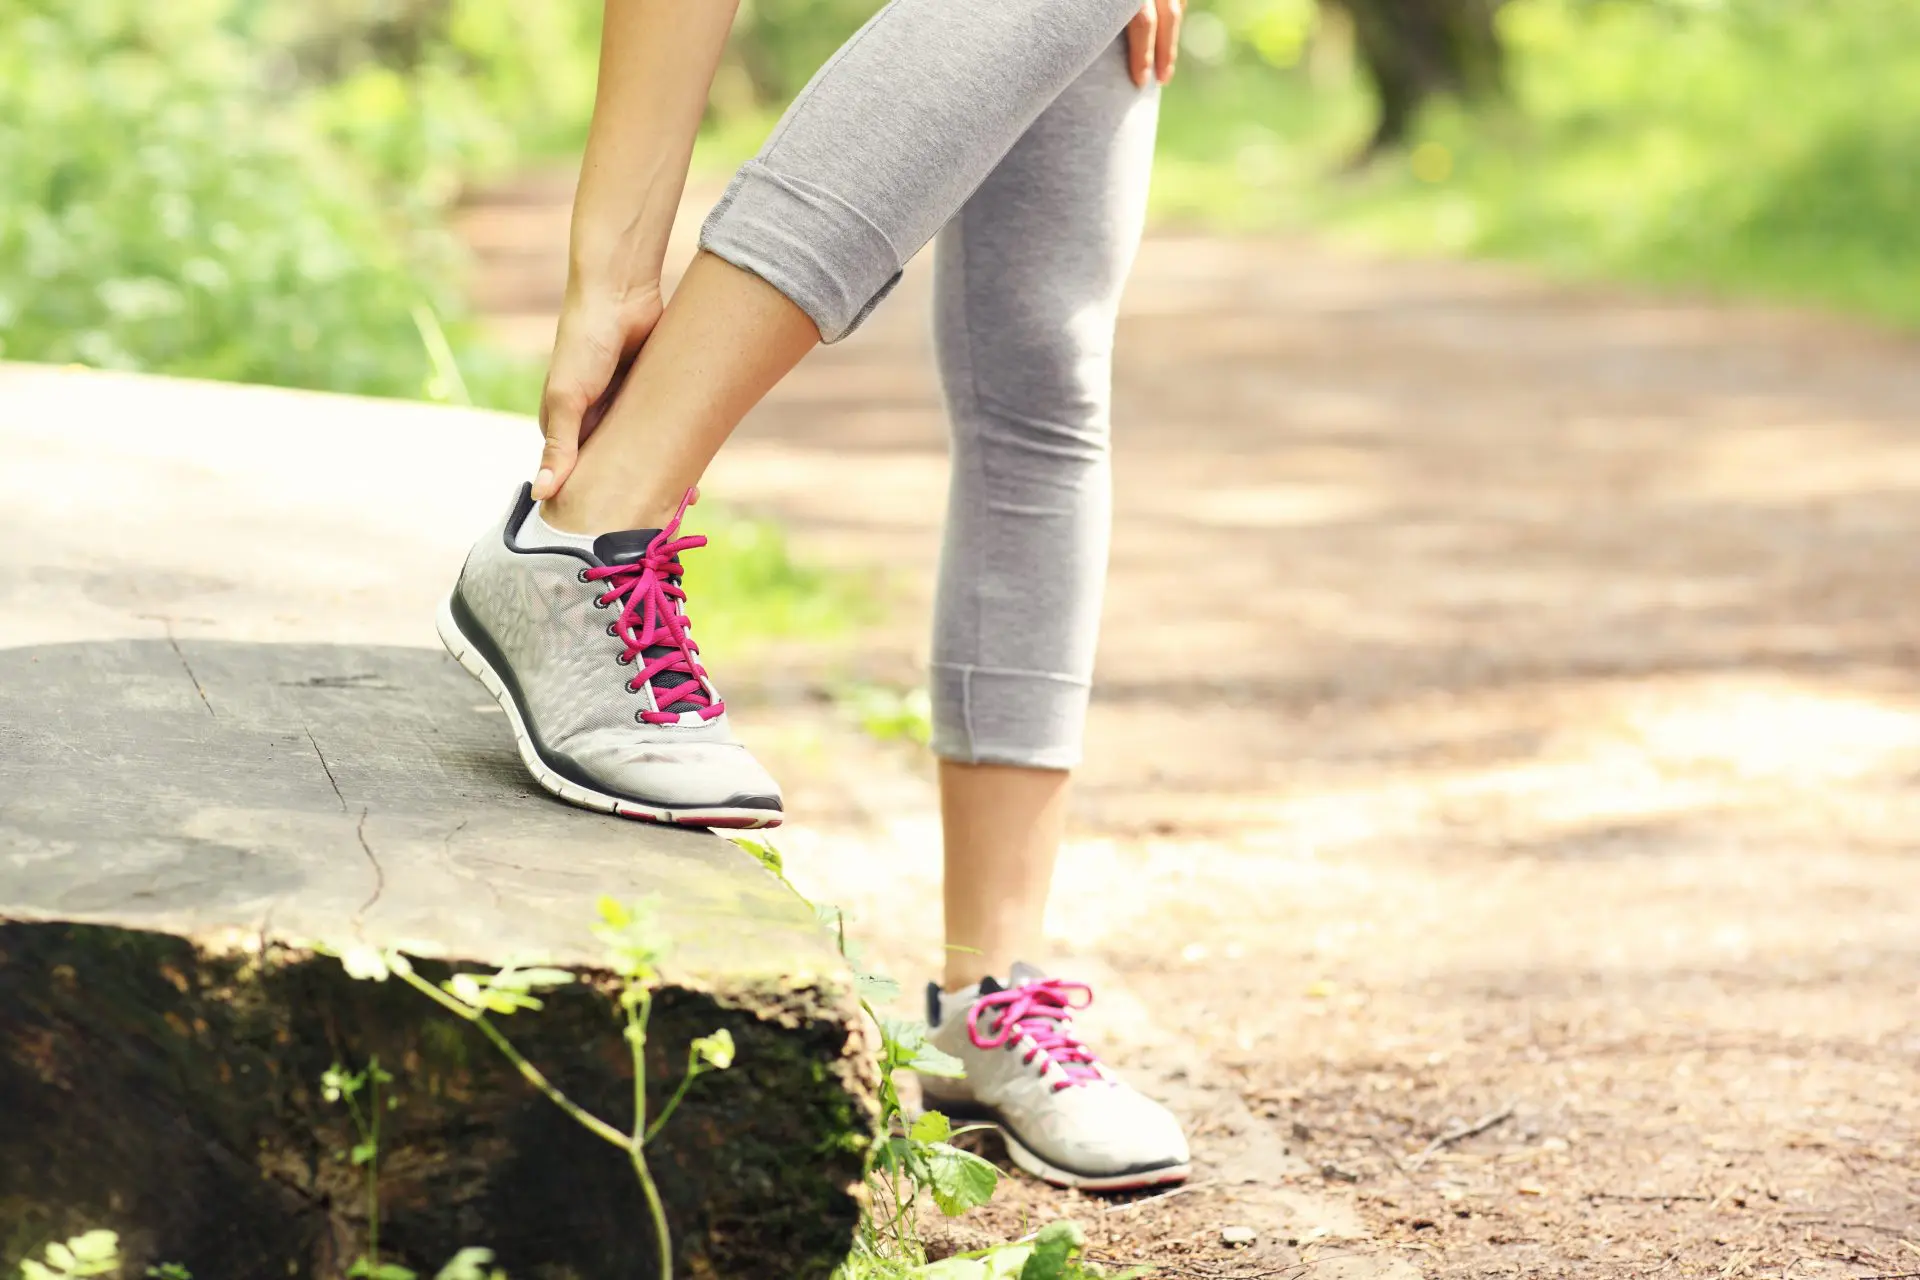 Heel Pain & Running: Top 5 Shoes for Heel Pain | The Foot Practice